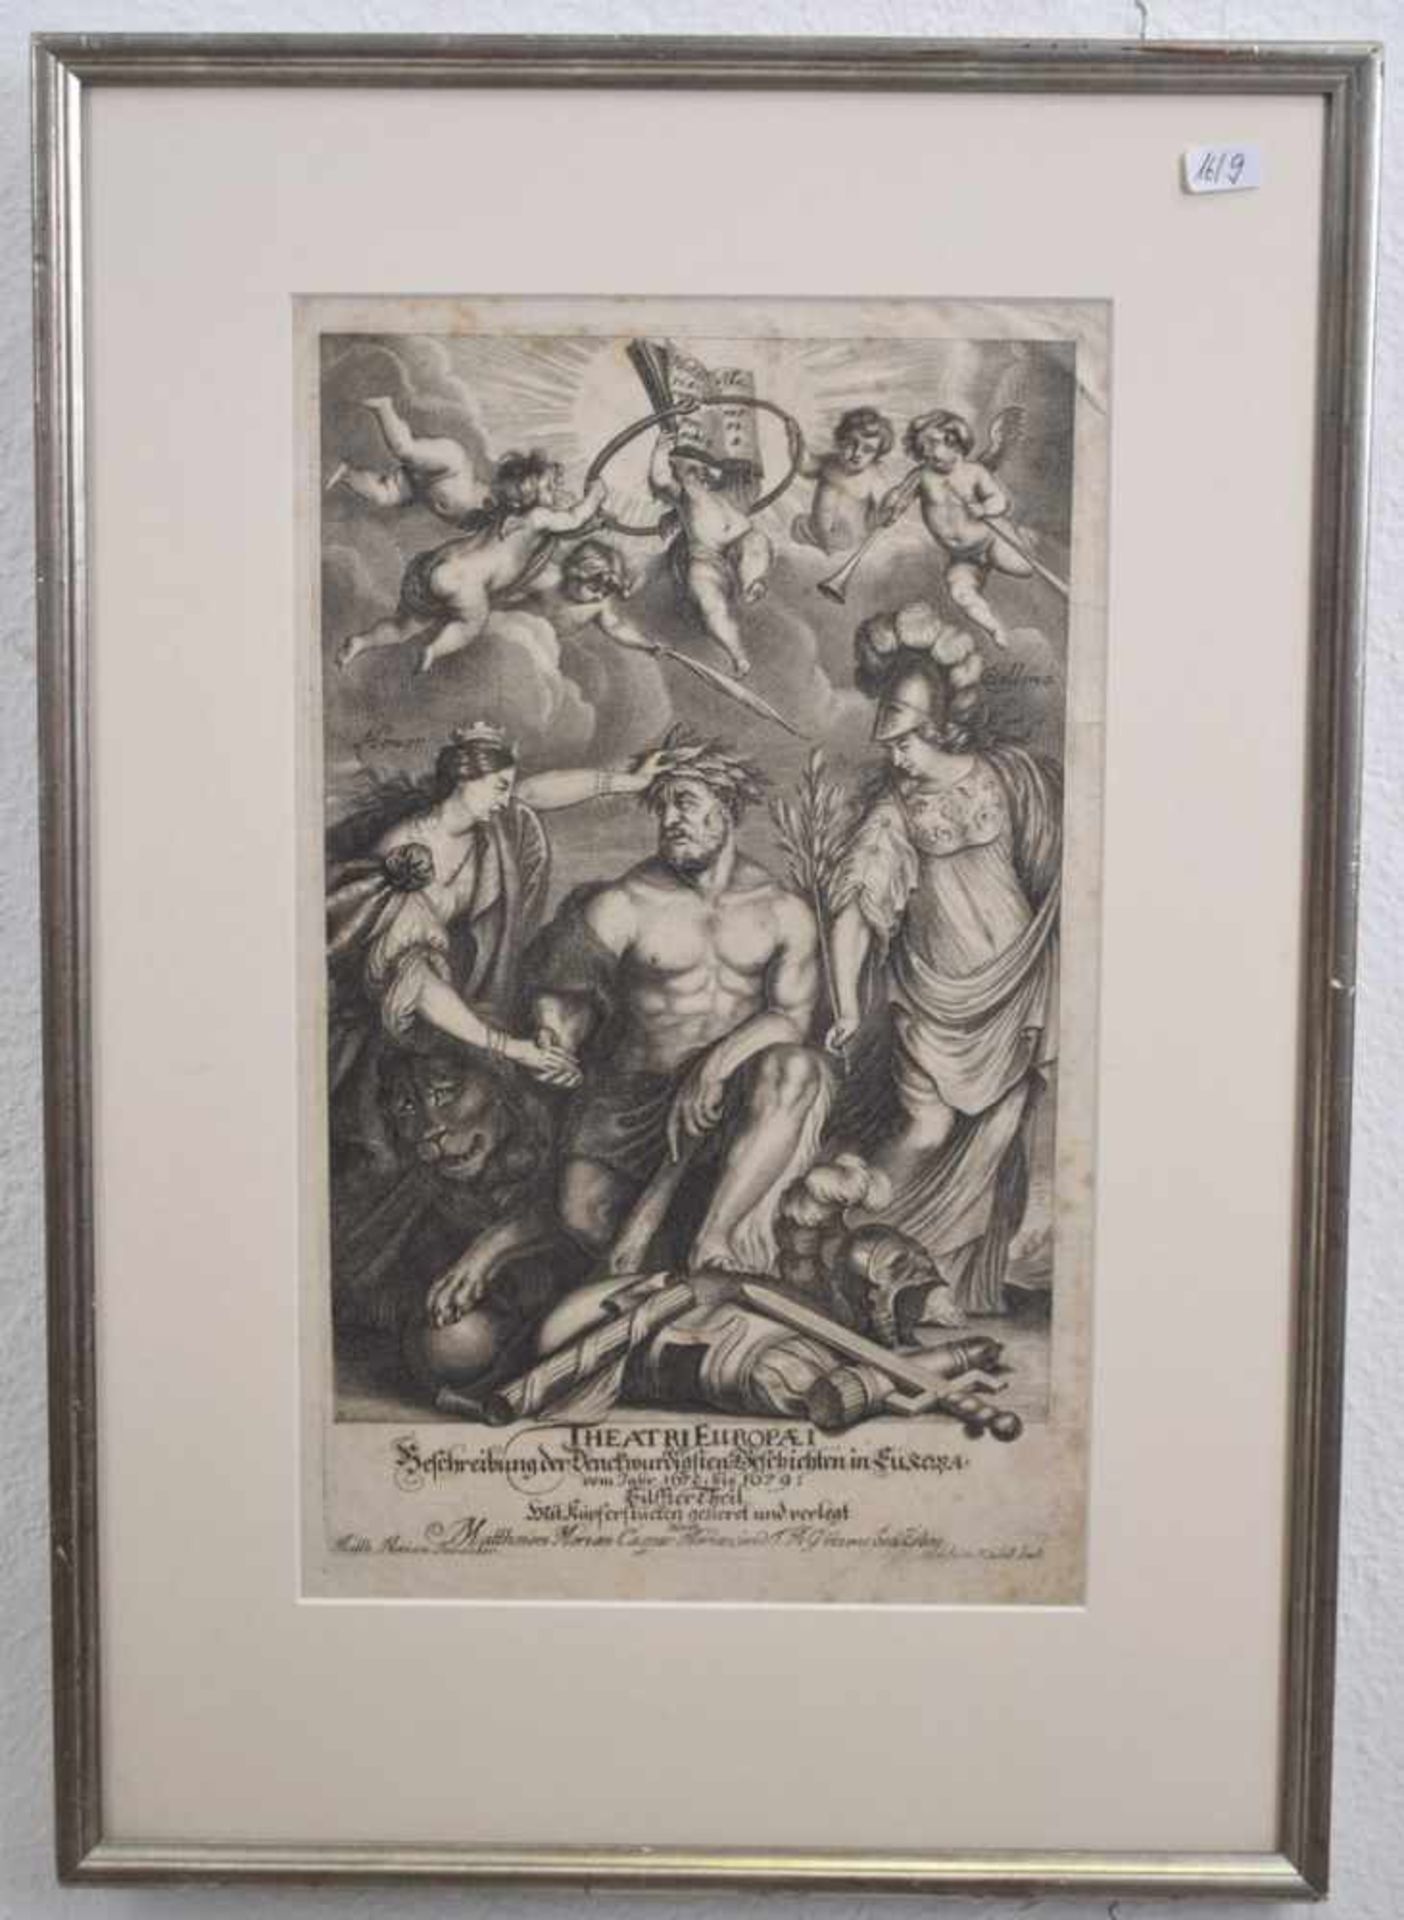 KupferstichTitel: Theatri Europäi, dat. 1672 bzw. 1679, u.l.sign. Merian, 39 X 31 cm, im Rahmen